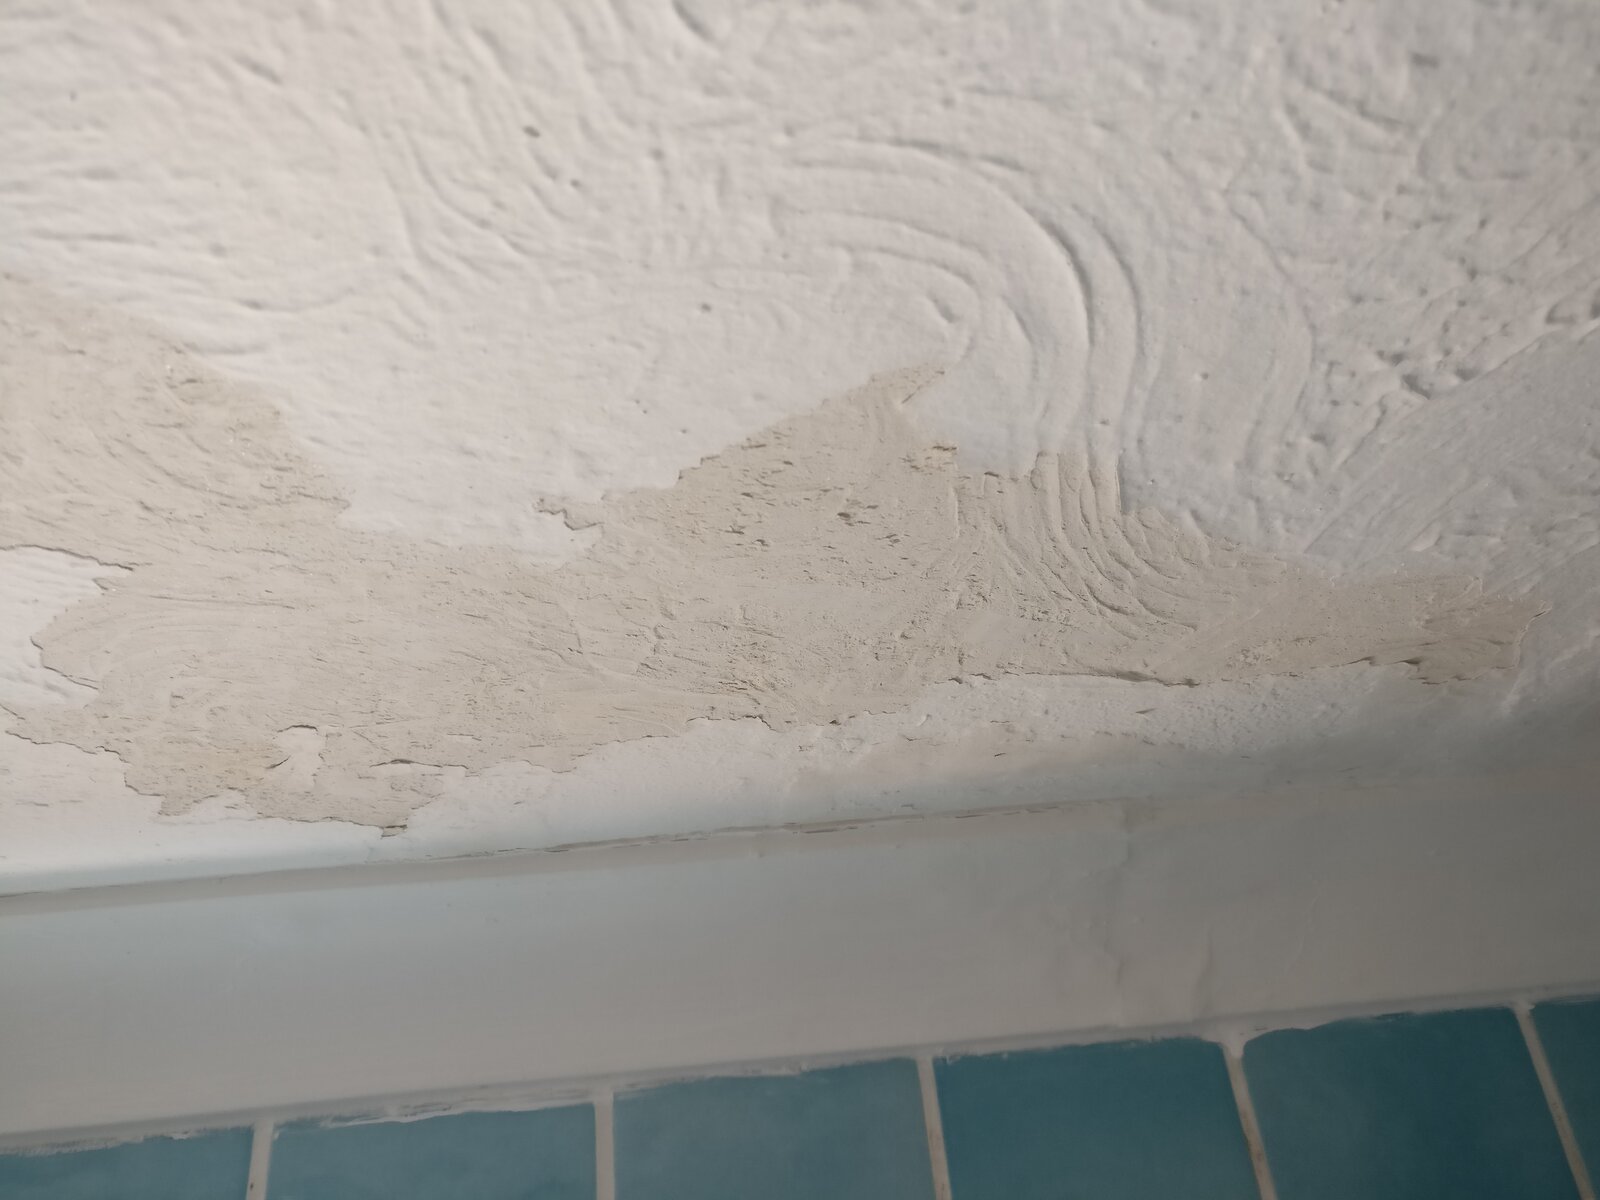 Painting Bathroom Ceiling Help